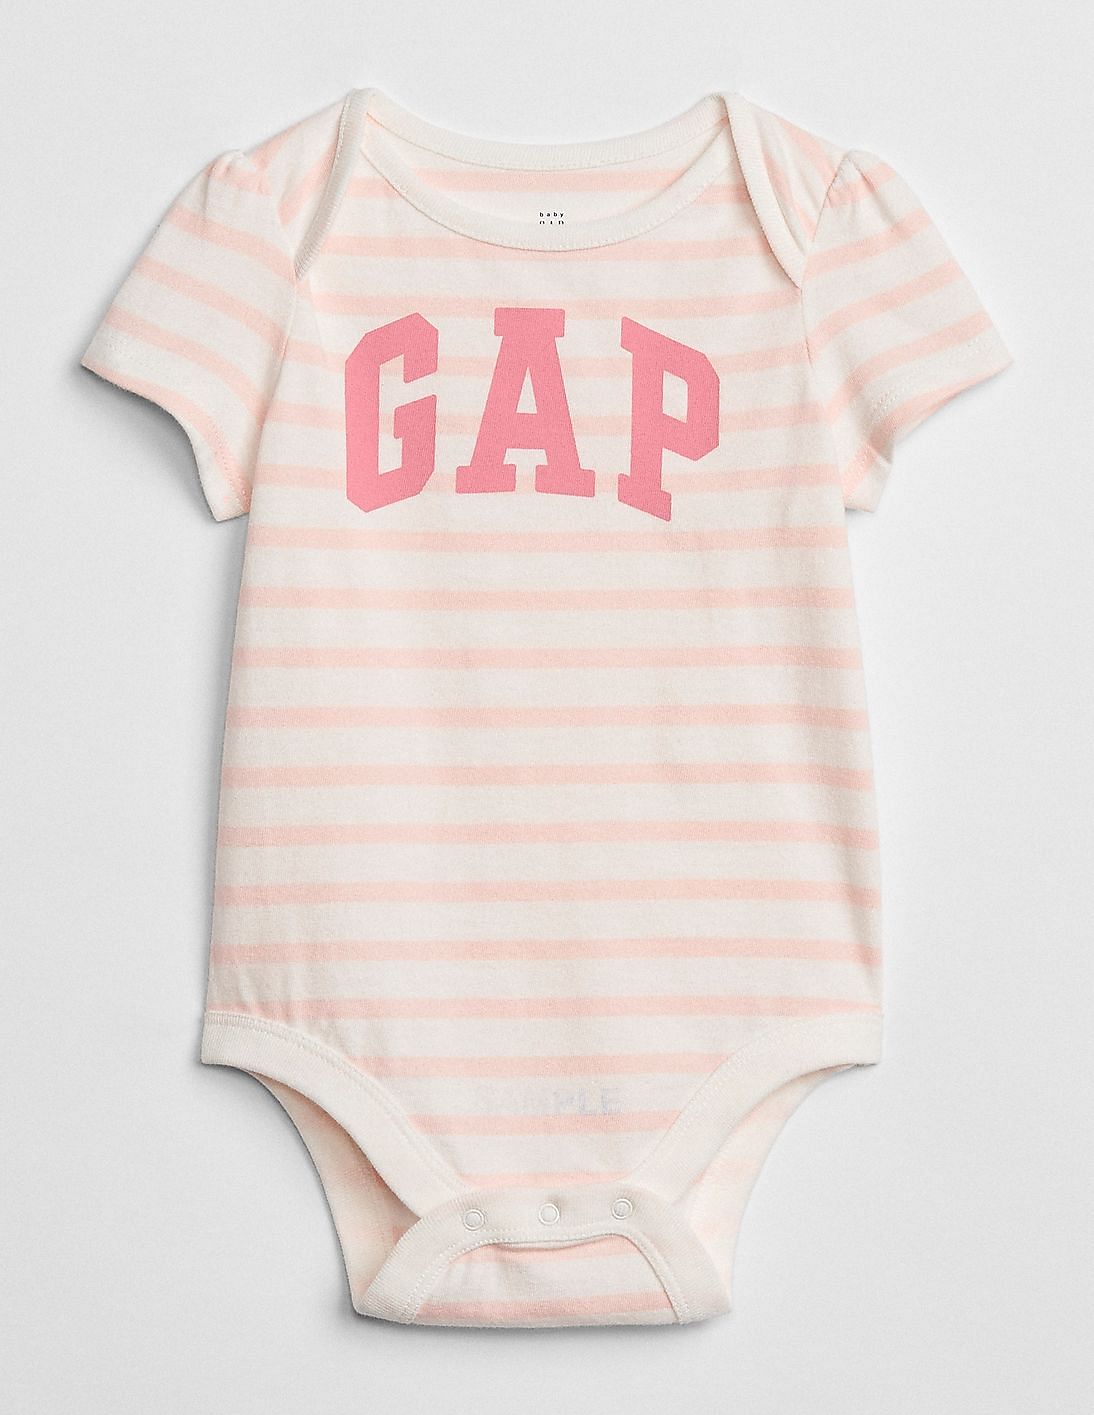 gap baby bodysuit